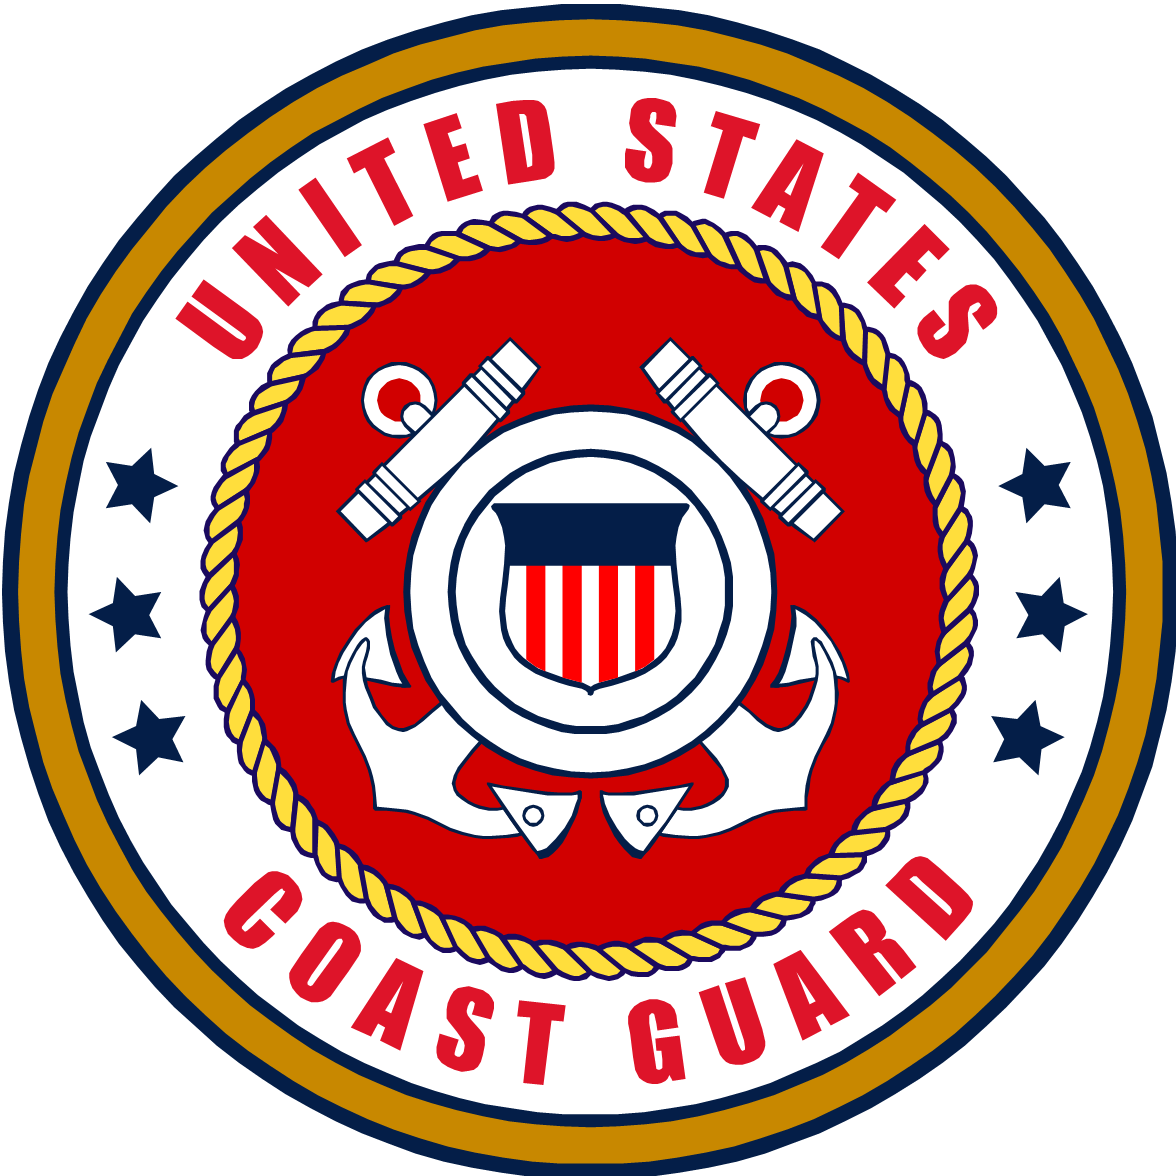 Coast guard emblem clip art